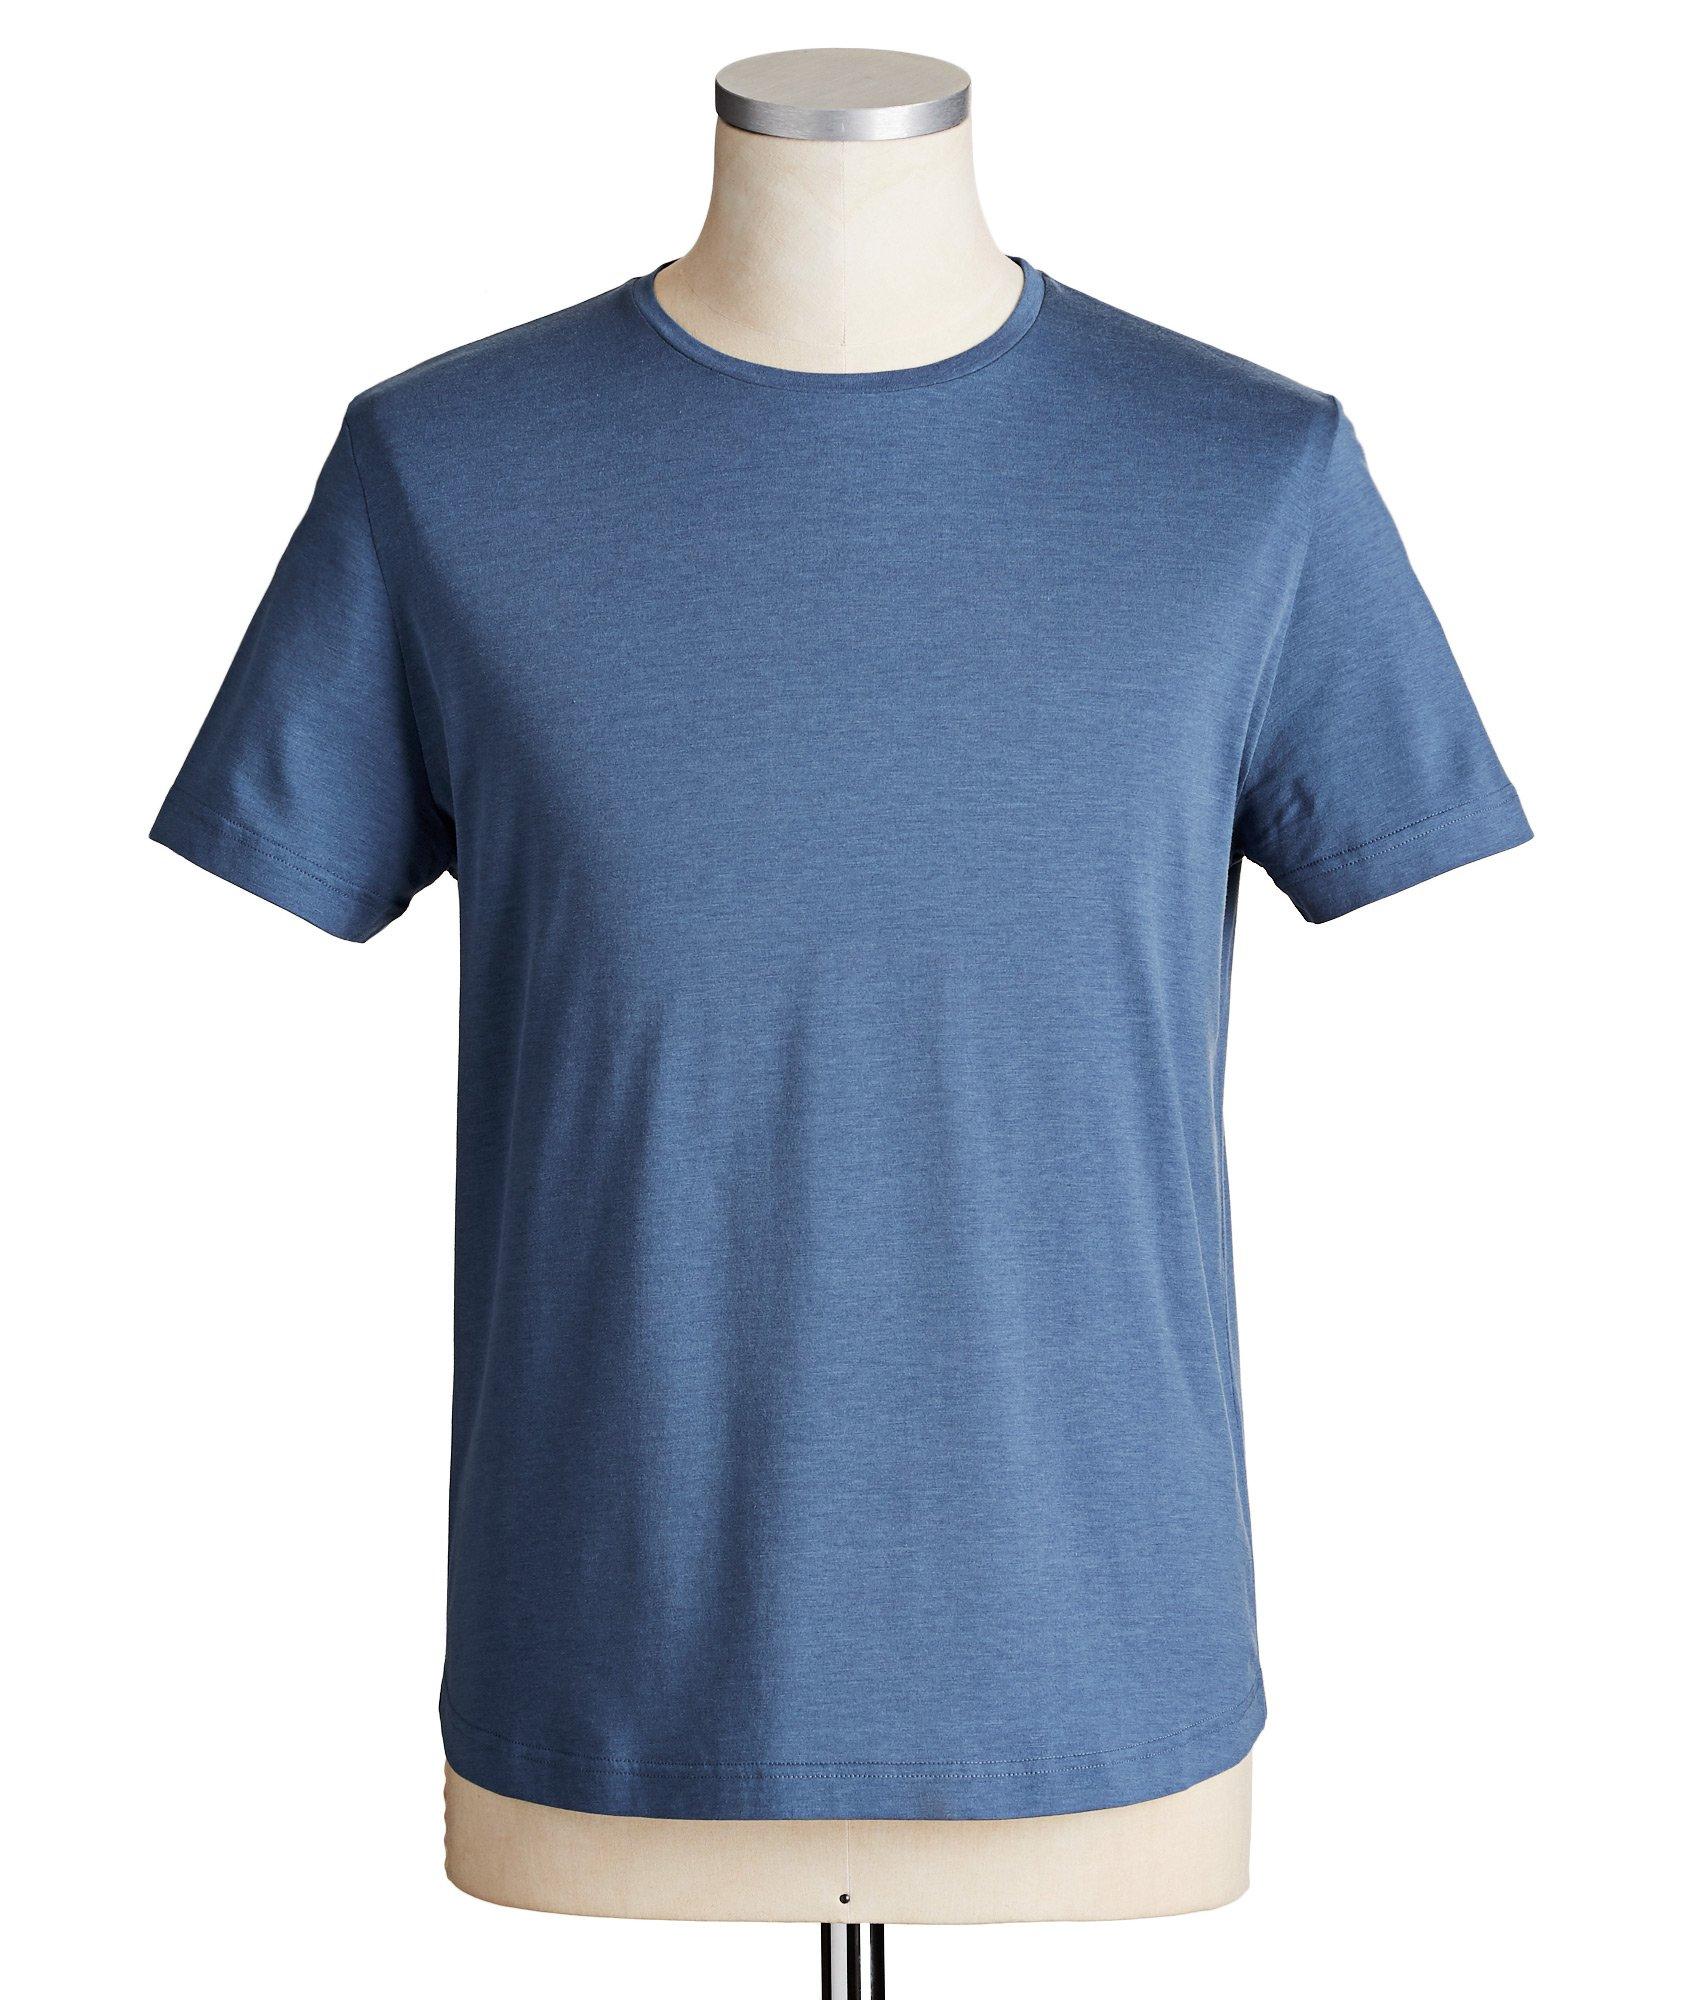 Silk & Cotton Blend T-Shirt image 0